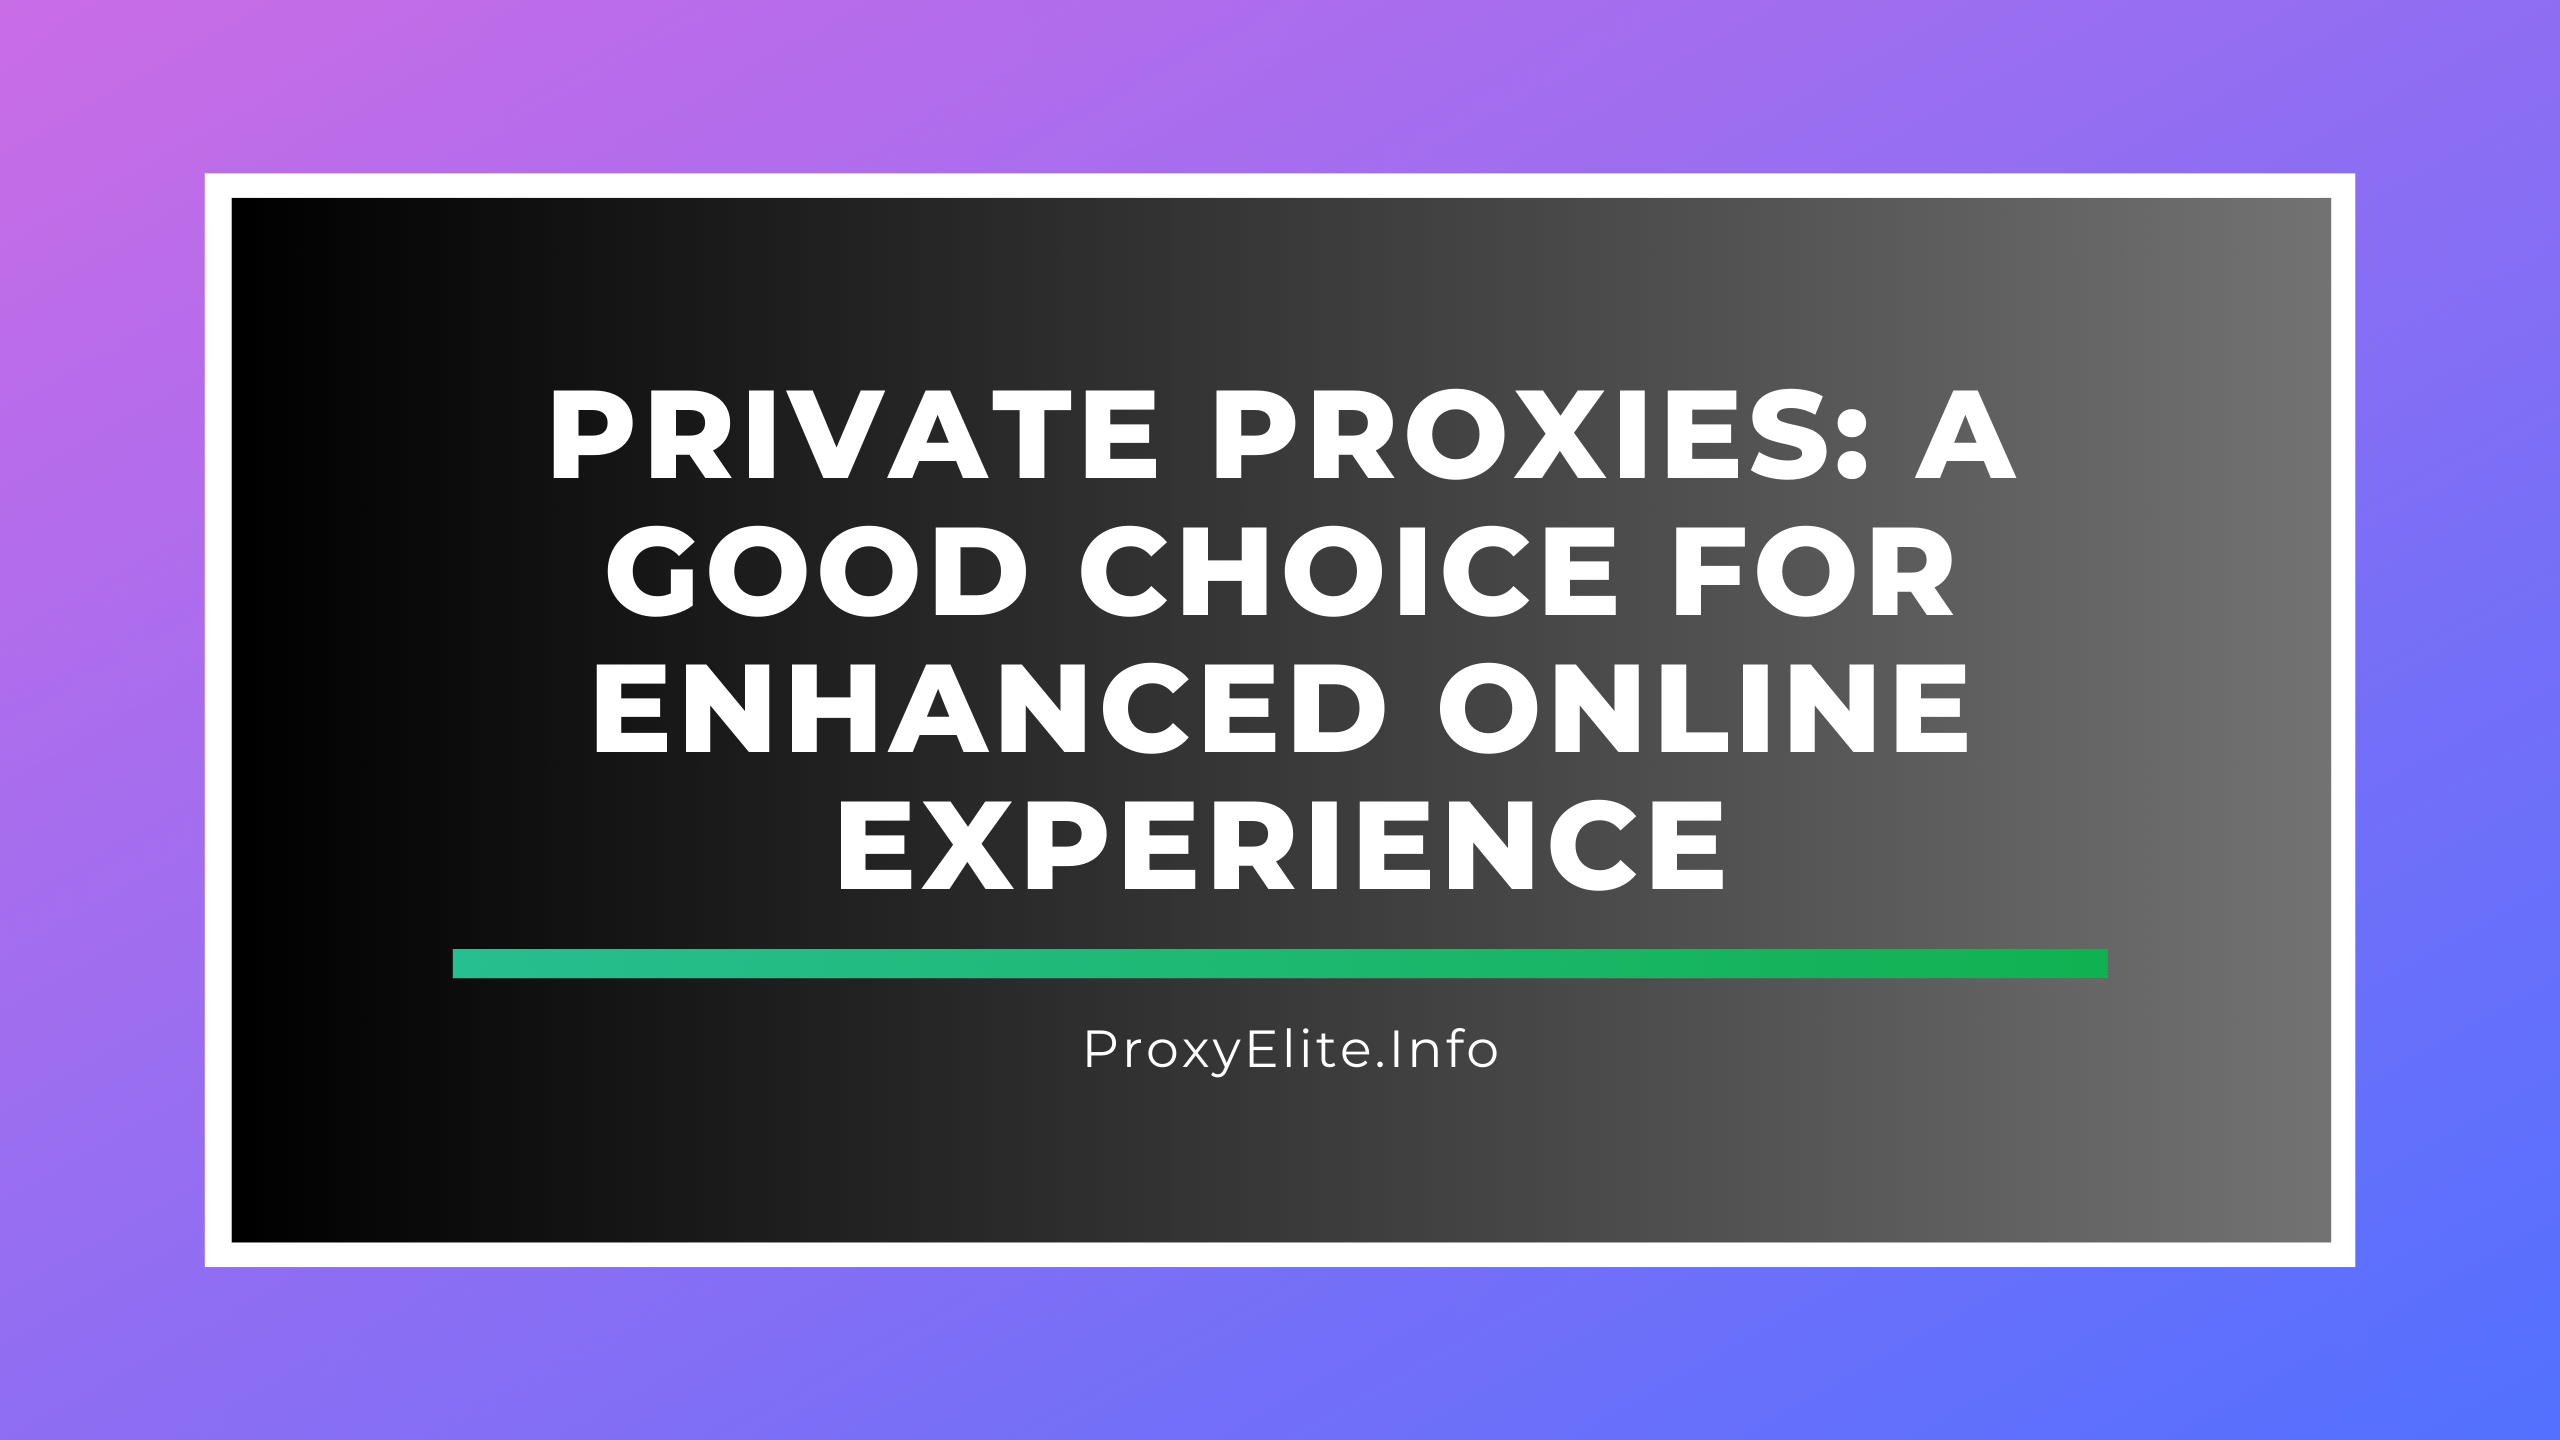 Proxy riêng: Lựa chọn tốt để nâng cao trải nghiệm trực tuyến